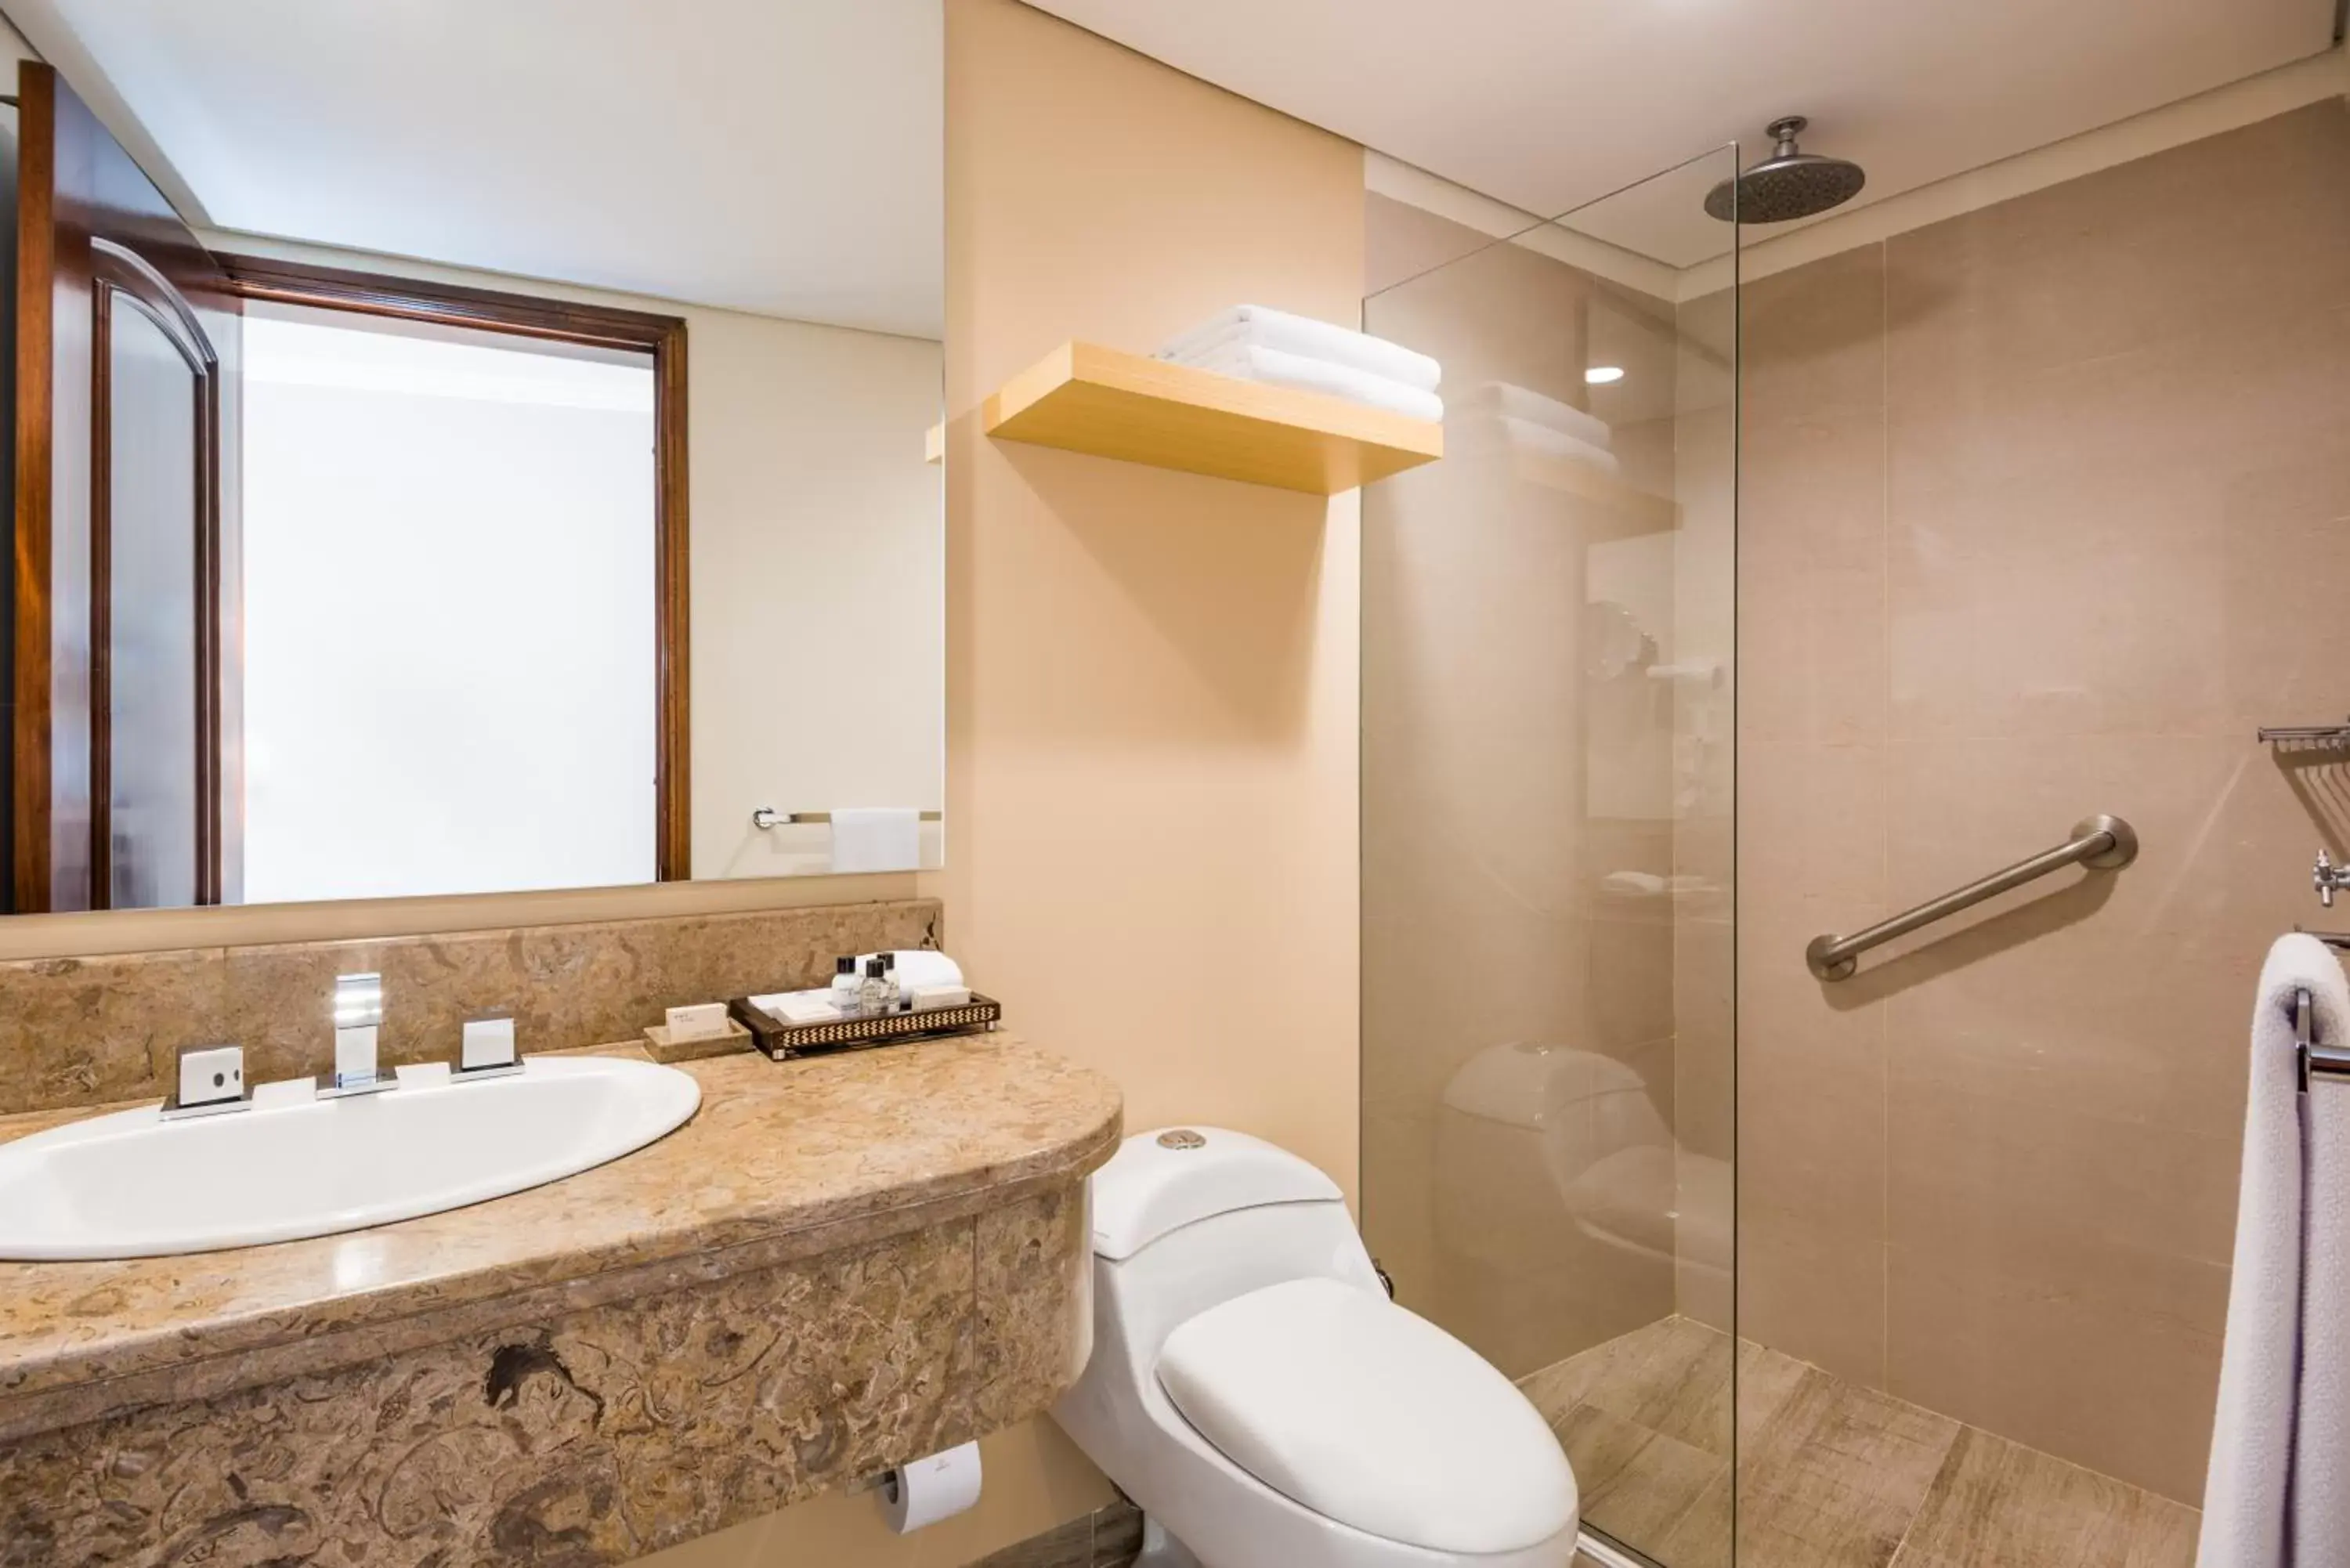 Bathroom in Cosmos 100 Hotel & Centro de Convenciones - Hoteles Cosmos